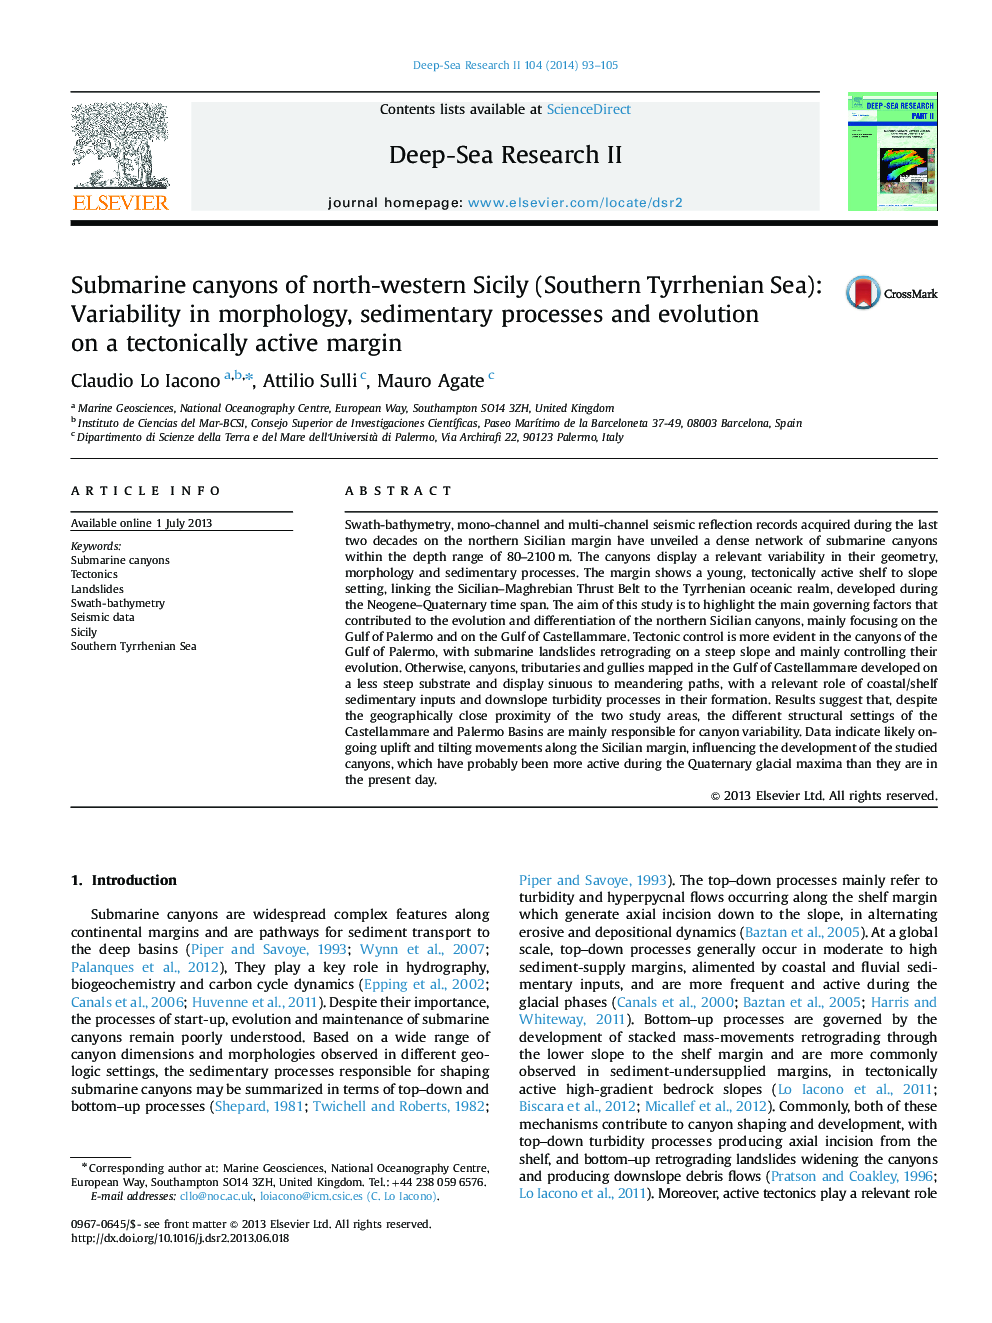 کانی های زیردریایی سیسیل شمال غربی (دریای تایرین جنوبی): تنوع در مورفولوژی، فرآیند رسوب و تکامل بر حاشیه تکتونیکی فعال 